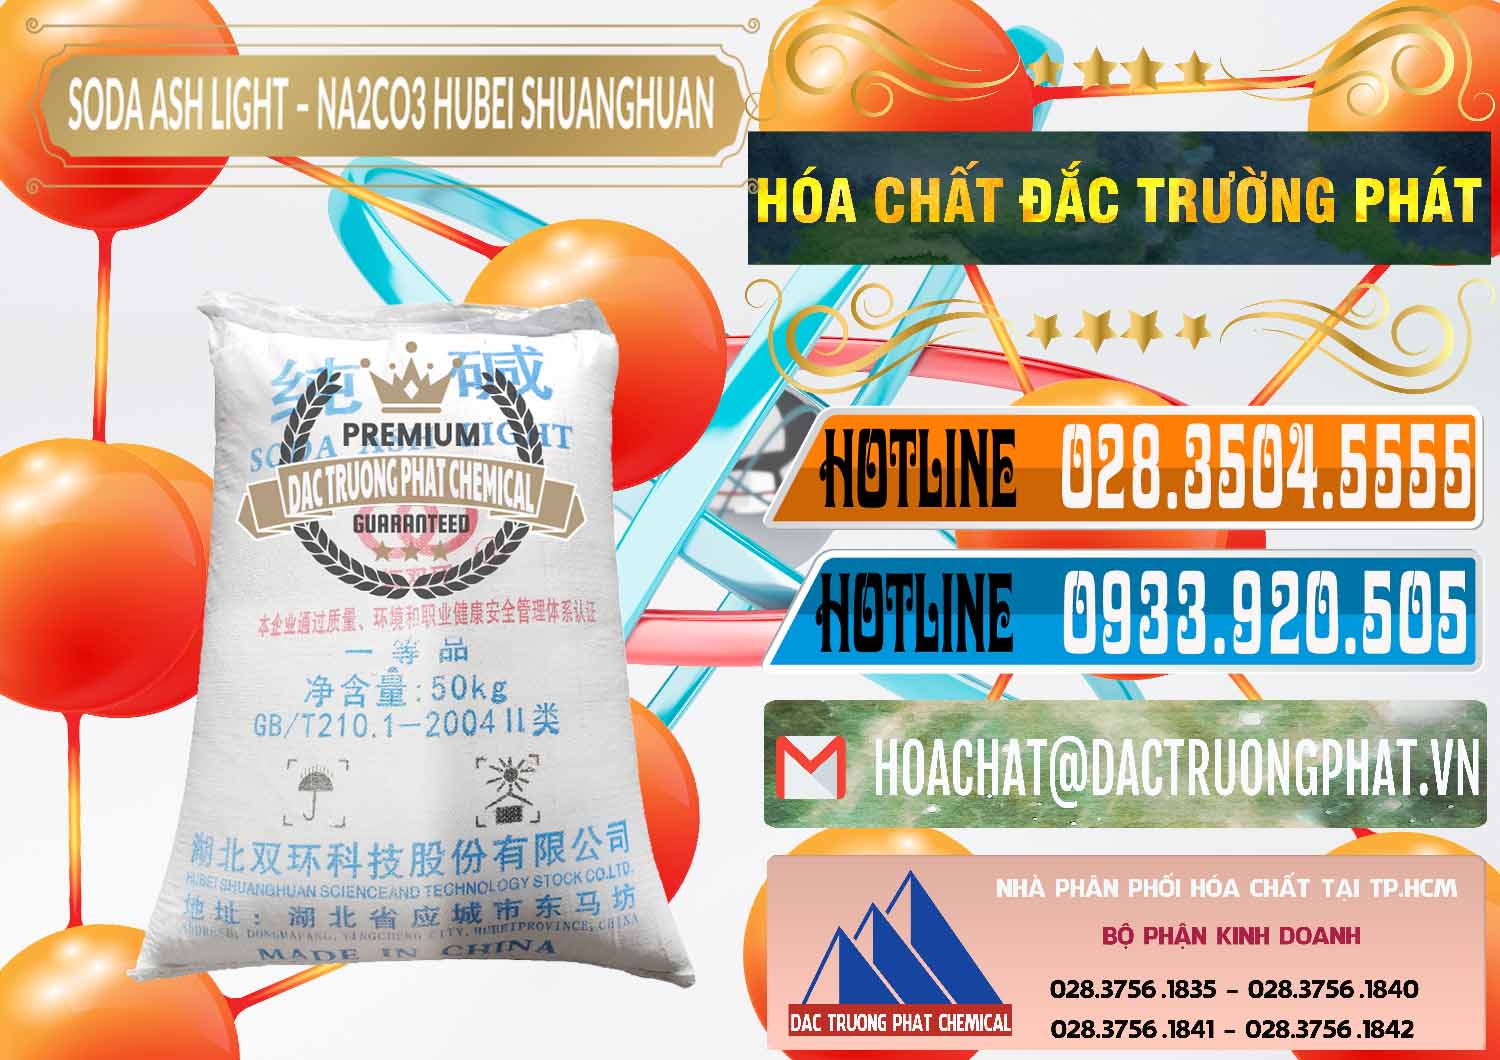 Chuyên bán - phân phối Soda Ash Light - NA2CO3 2 Vòng Tròn Hubei Shuanghuan Trung Quốc China - 0130 - Công ty chuyên kinh doanh _ cung cấp hóa chất tại TP.HCM - stmp.net